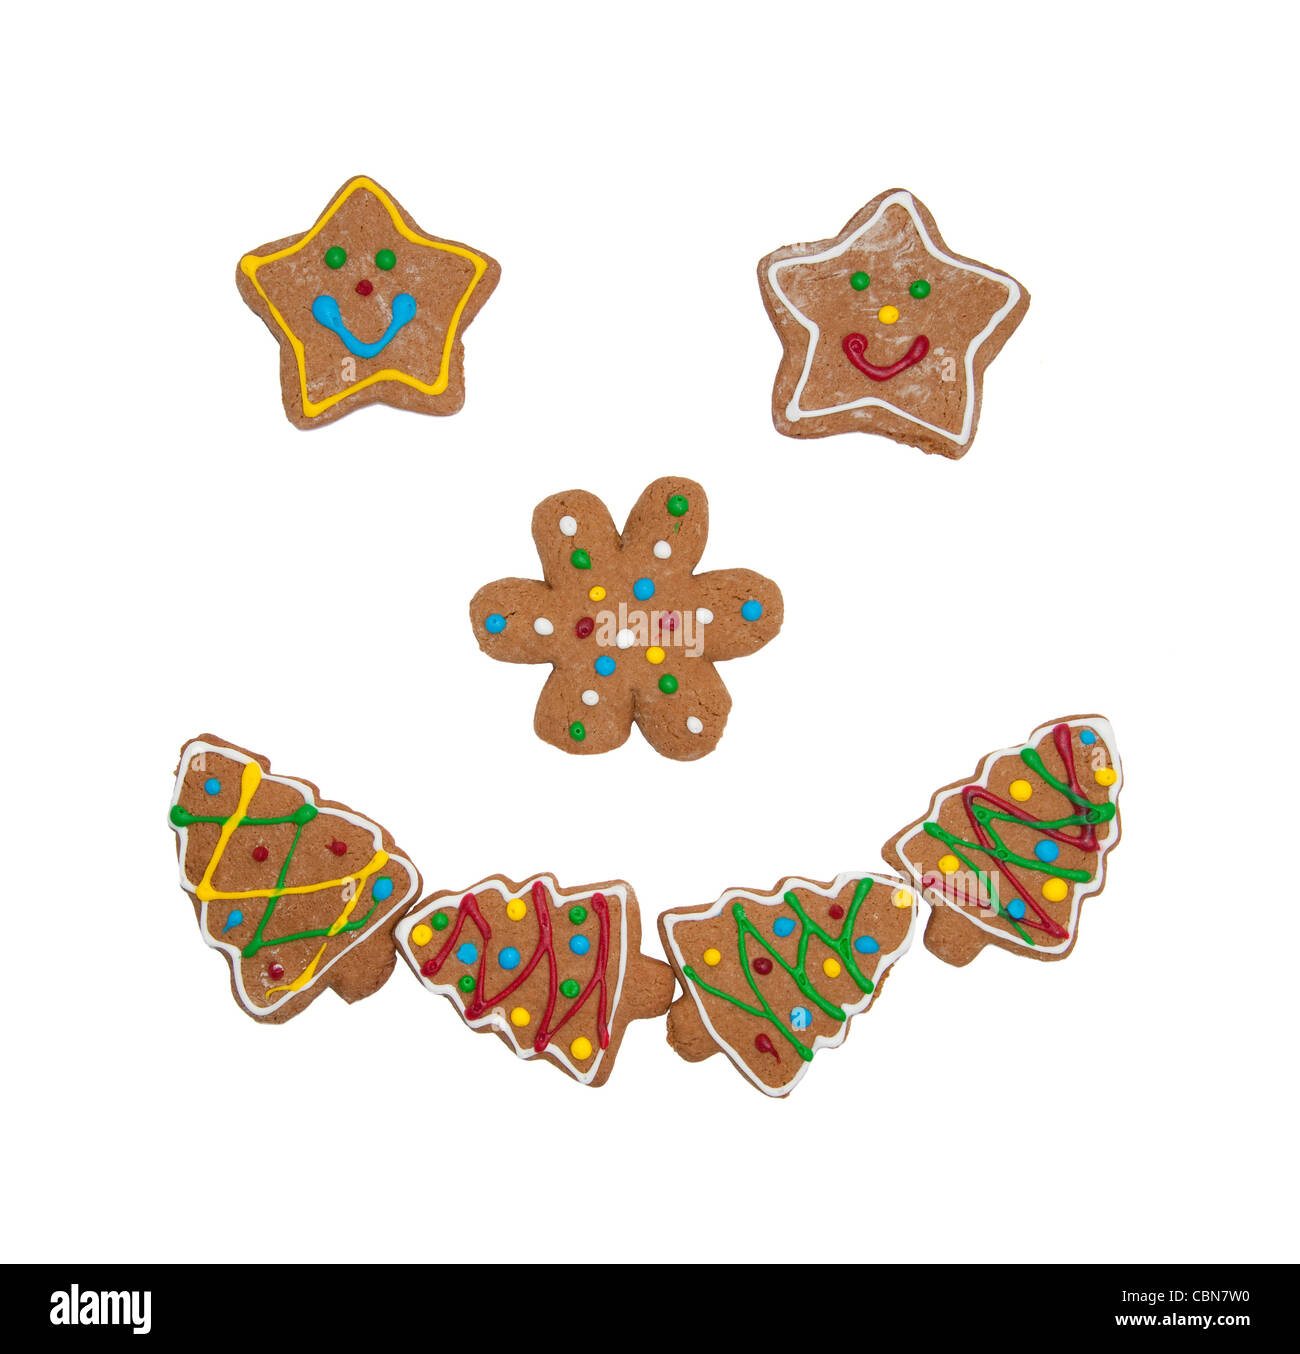 Les cookies de Noël colorés formant un visage souriant sur fond blanc Banque D'Images